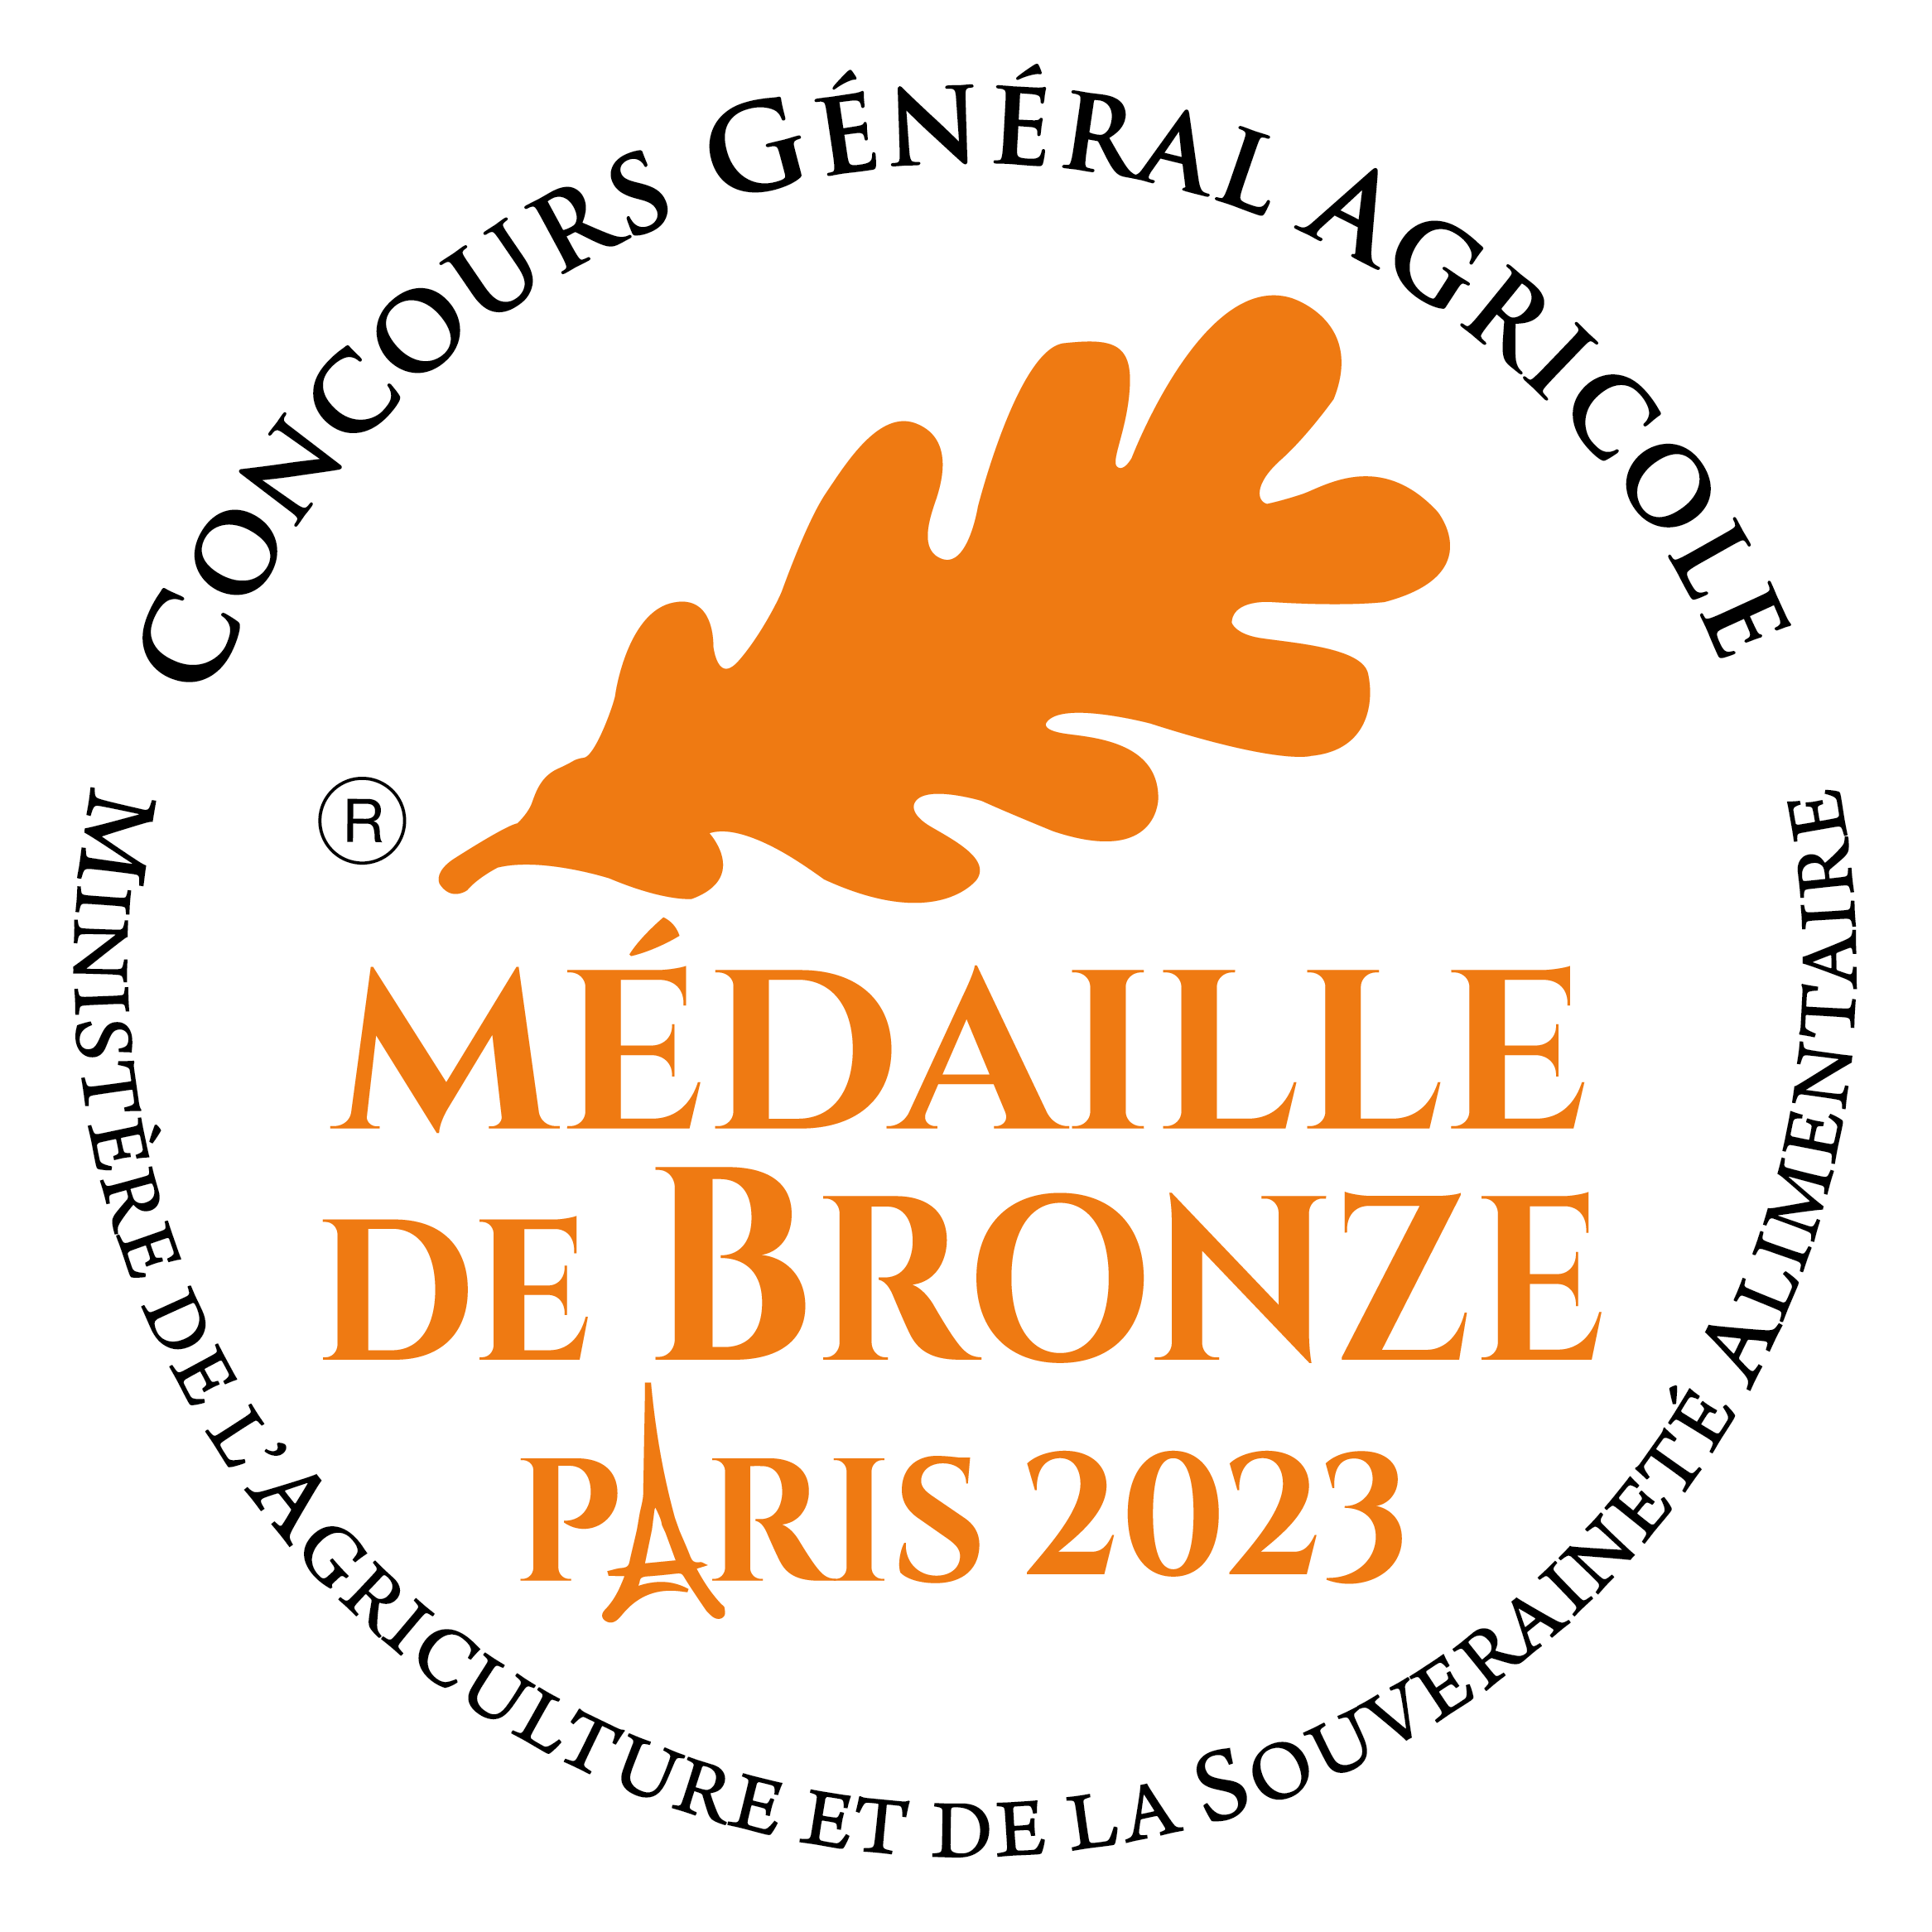 Concours Général Agricole de Paris 2023